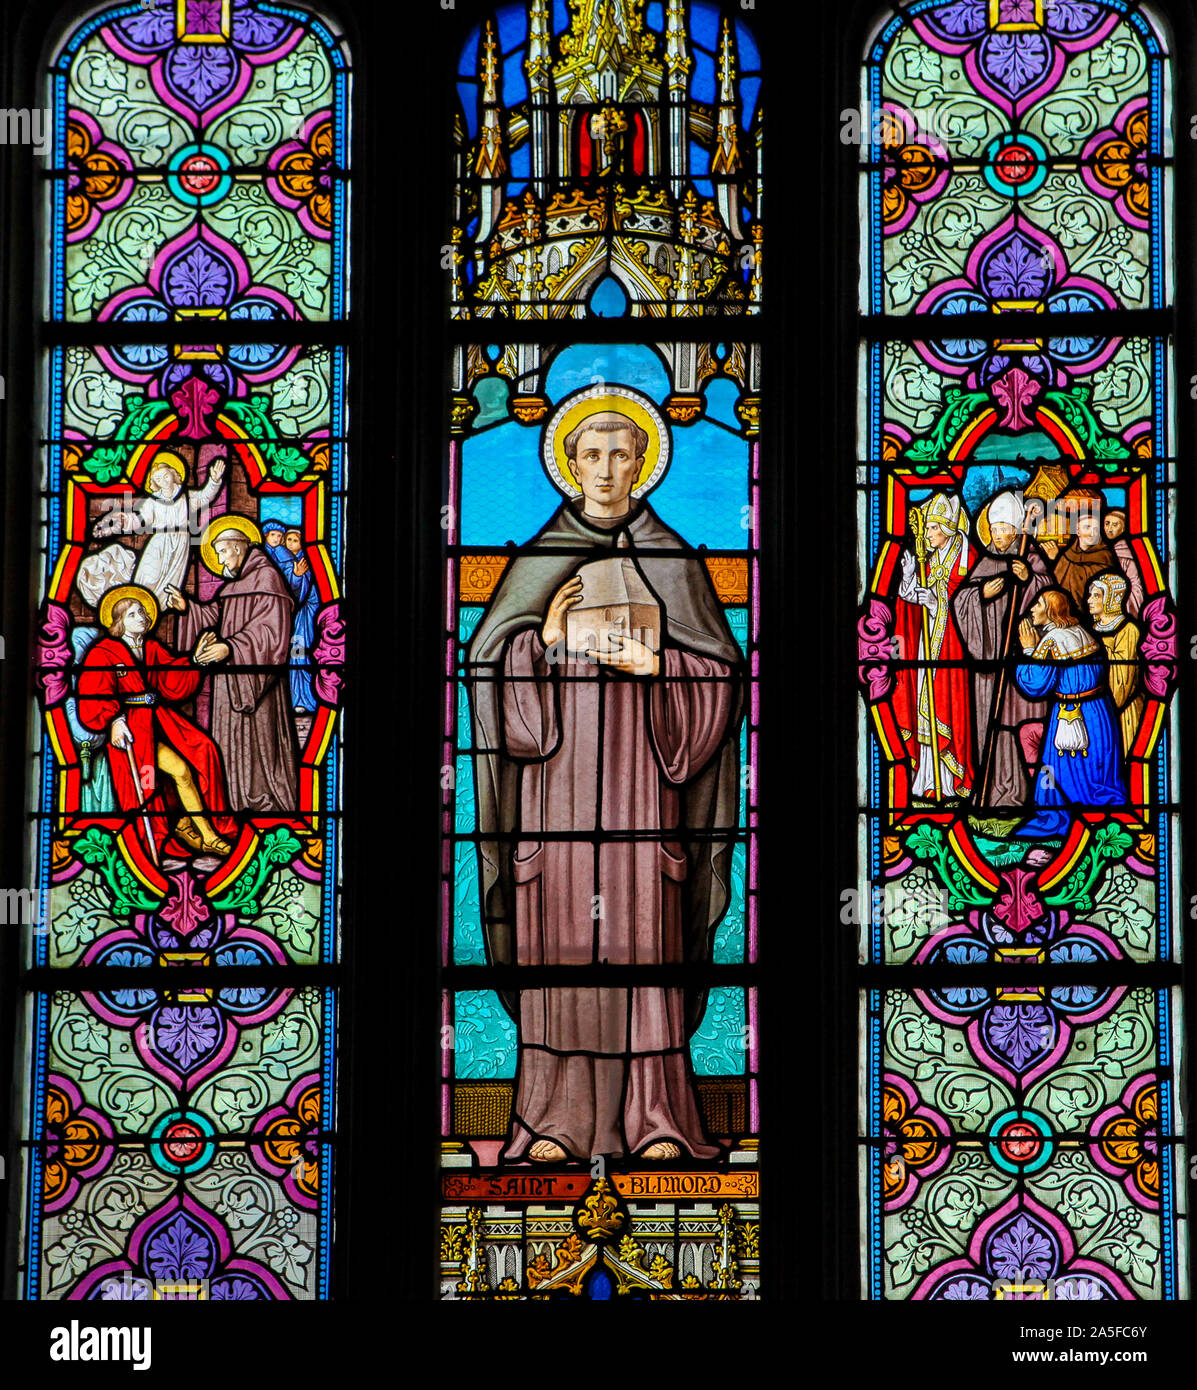 Vetro colorato nella chiesa di St Martin in St Valery sur Somme, Francia, raffiguranti San Bilmond, secondo abate di Saint-Valery-Sur-Somme Foto Stock